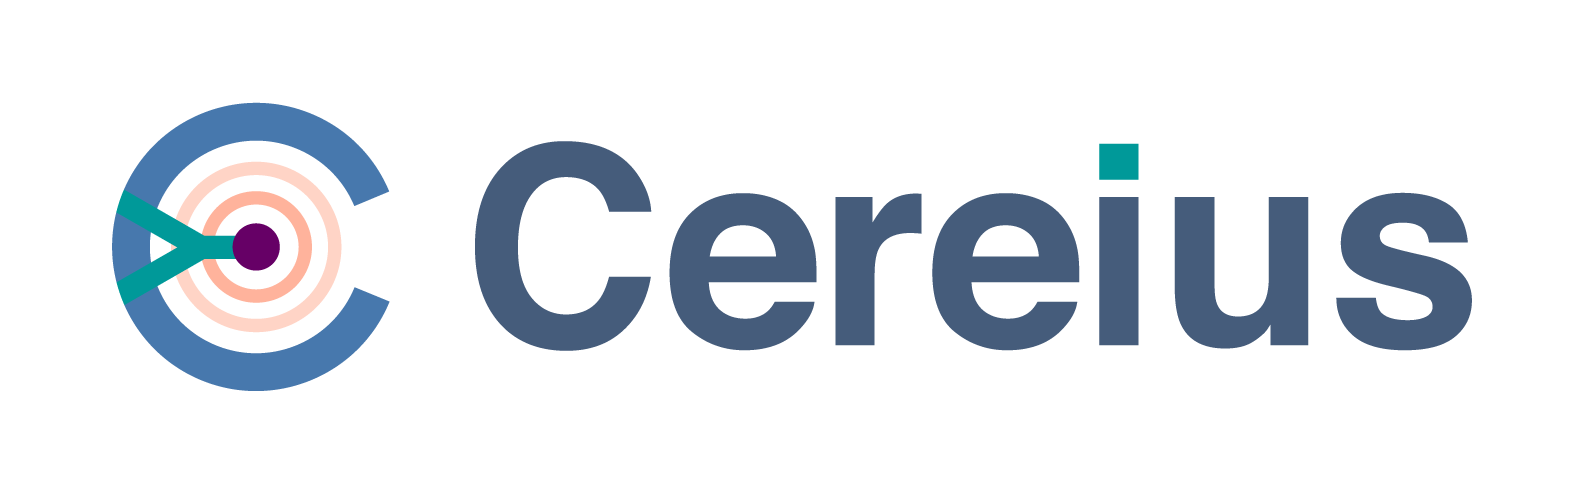 Cereius logo